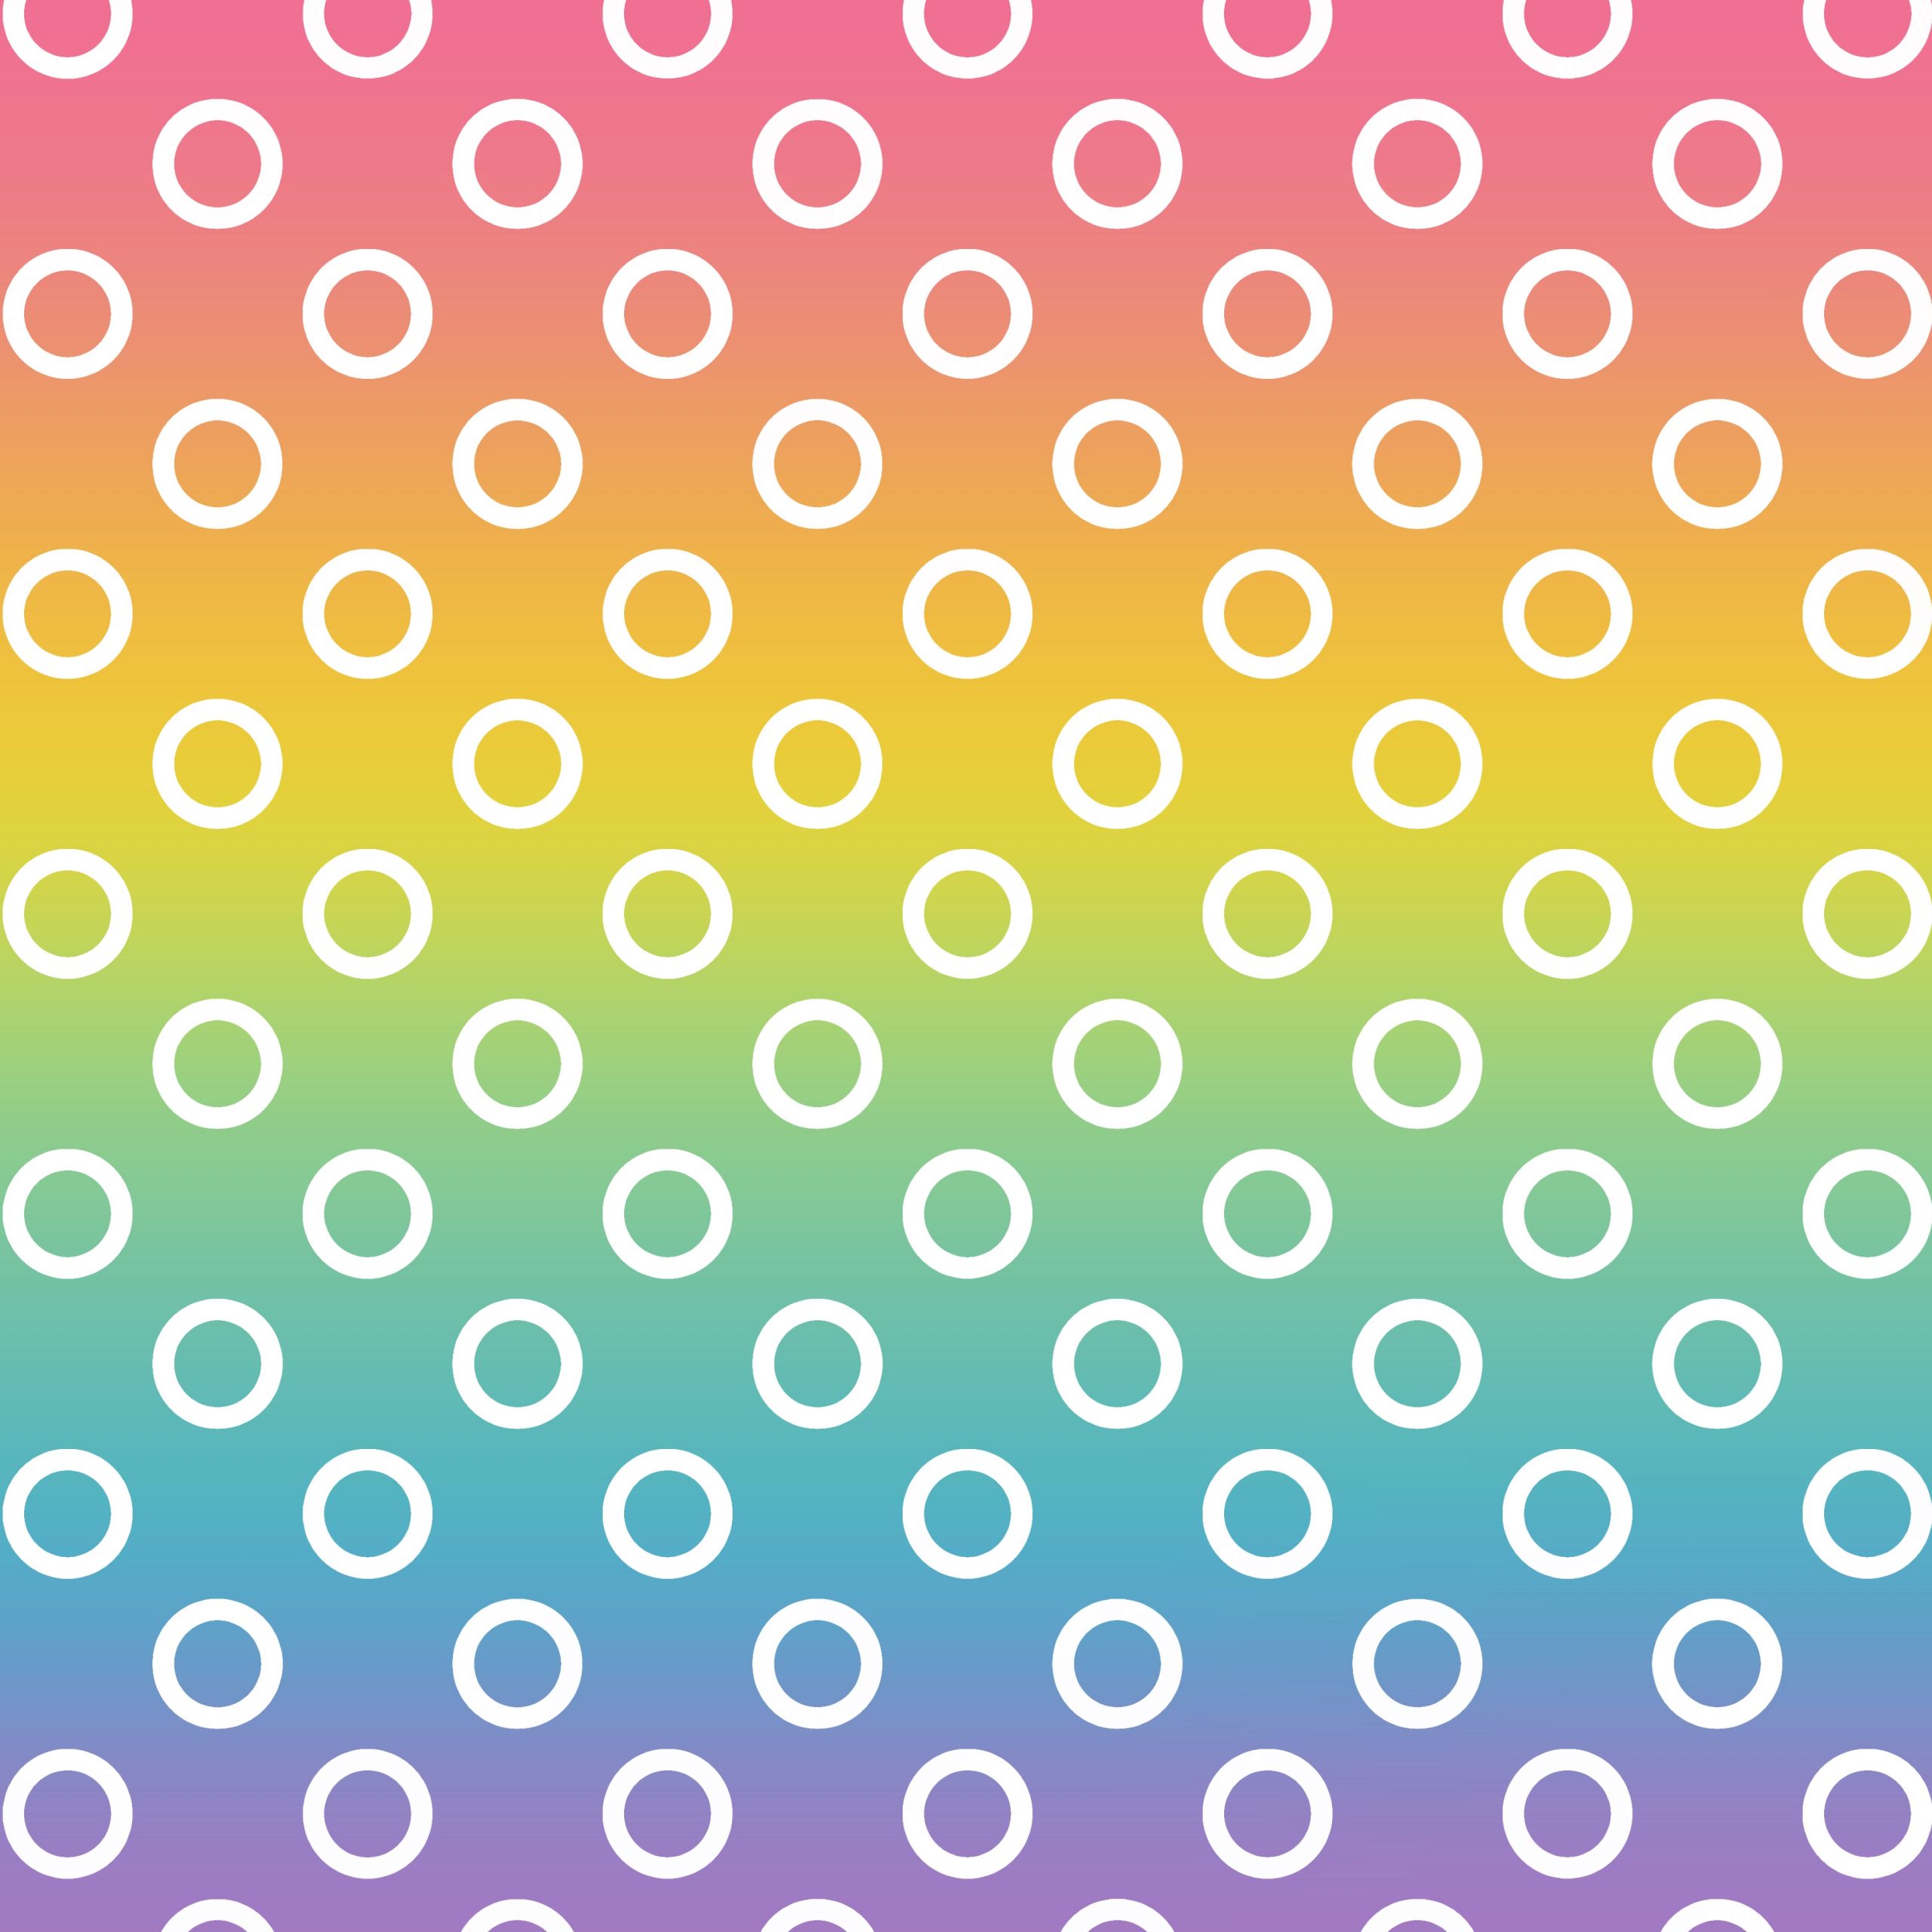 Fondo arcoiris con un patrón de círculos blancos